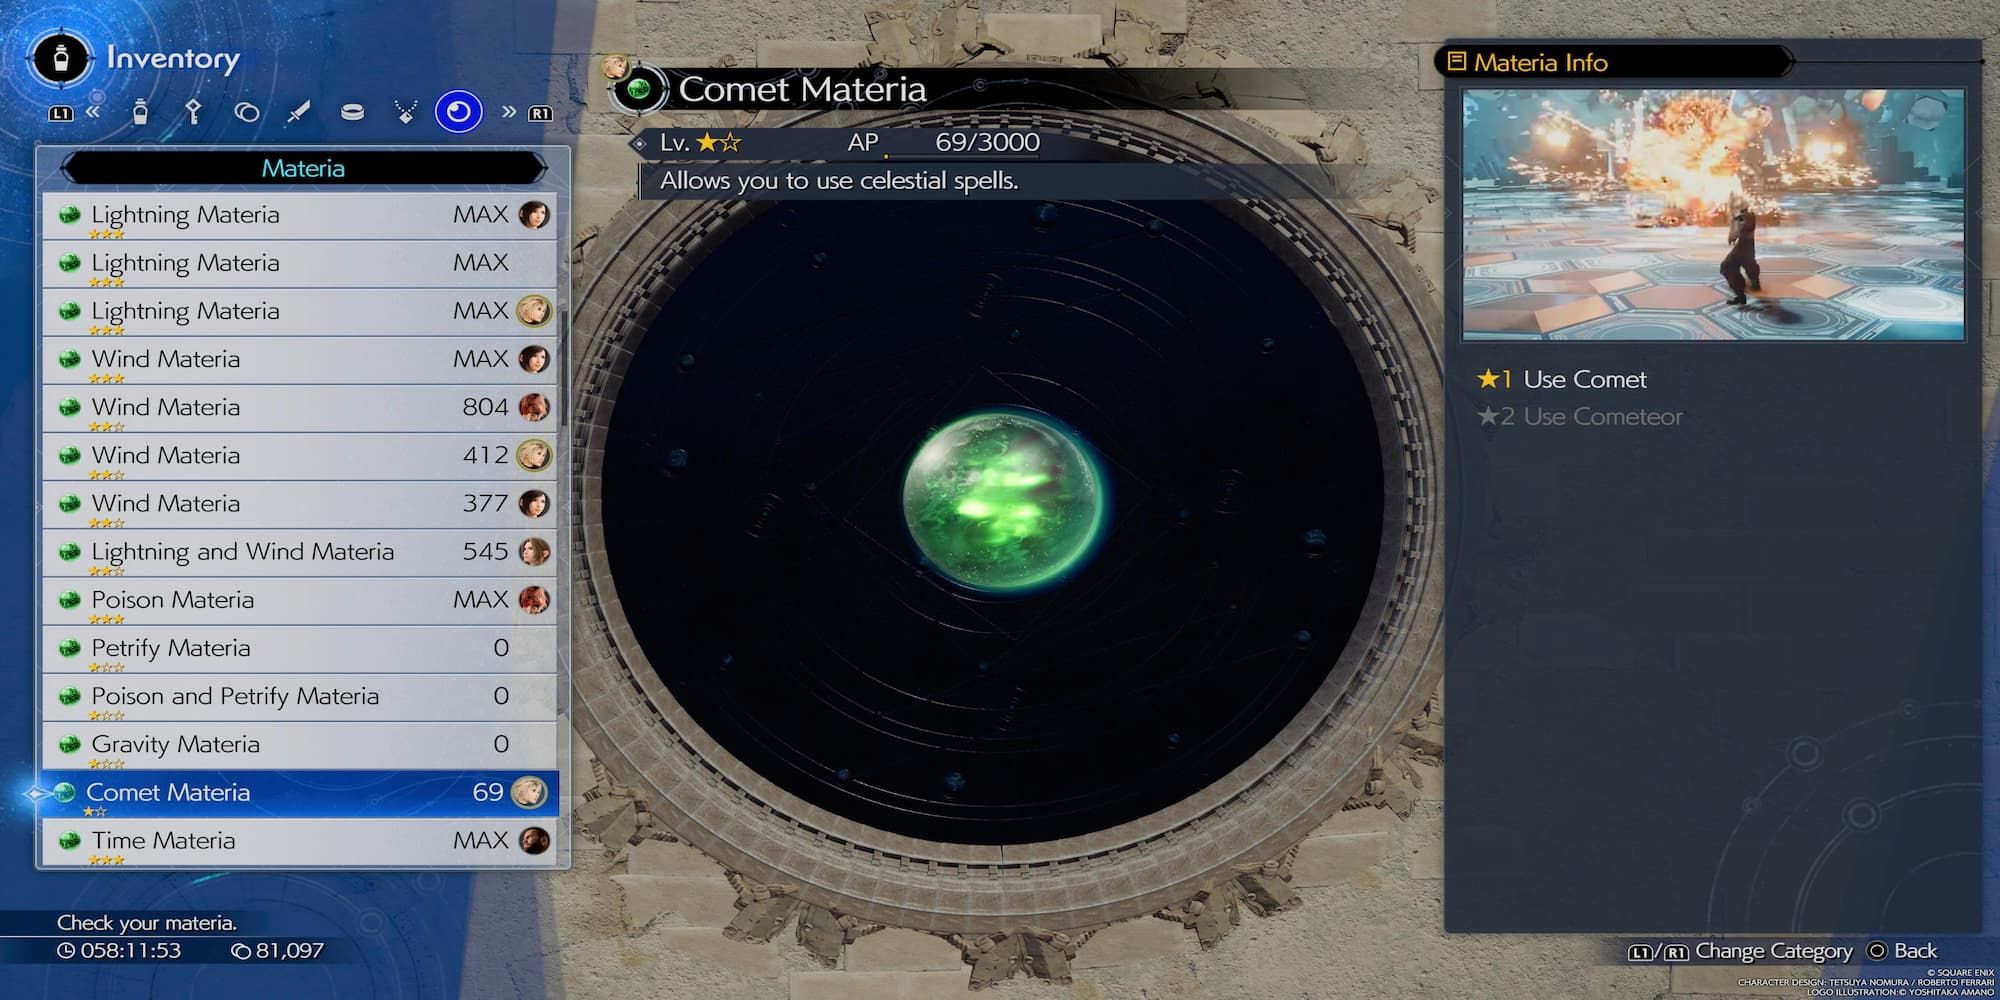 The Comet Materia In The Menu 